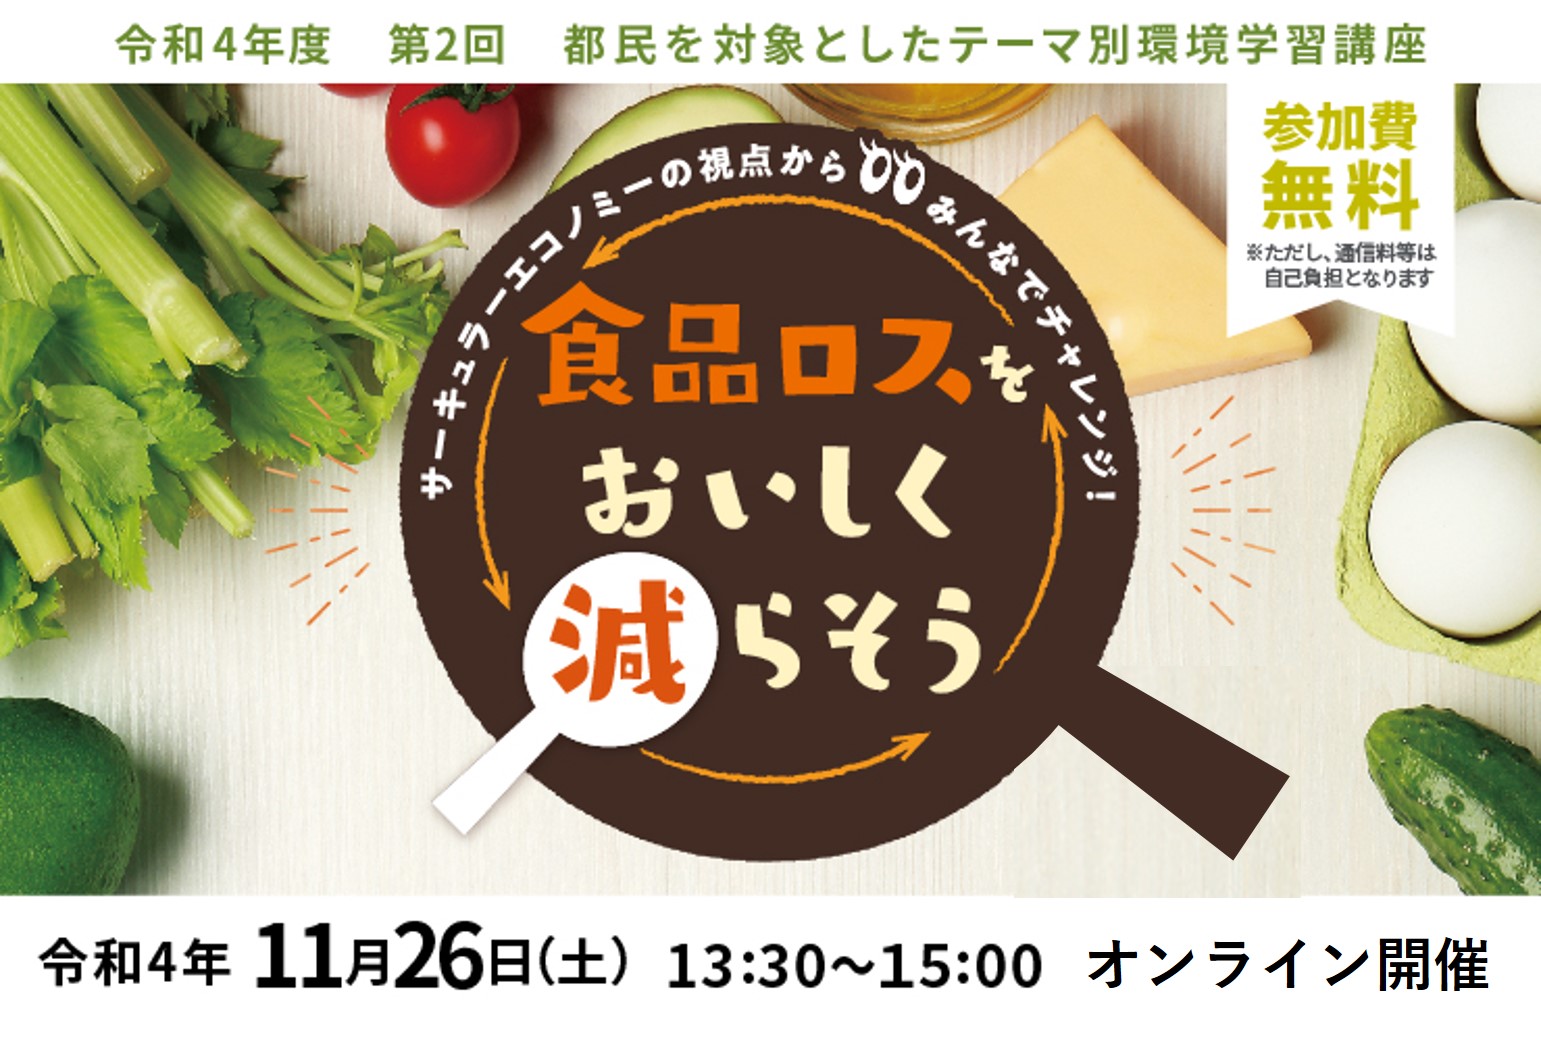 東京都環境公社 11 26 土 開催 都民向けテーマ別環境学習講座 第2回 食品ロスをおいしく減らそう の申込受付を開始